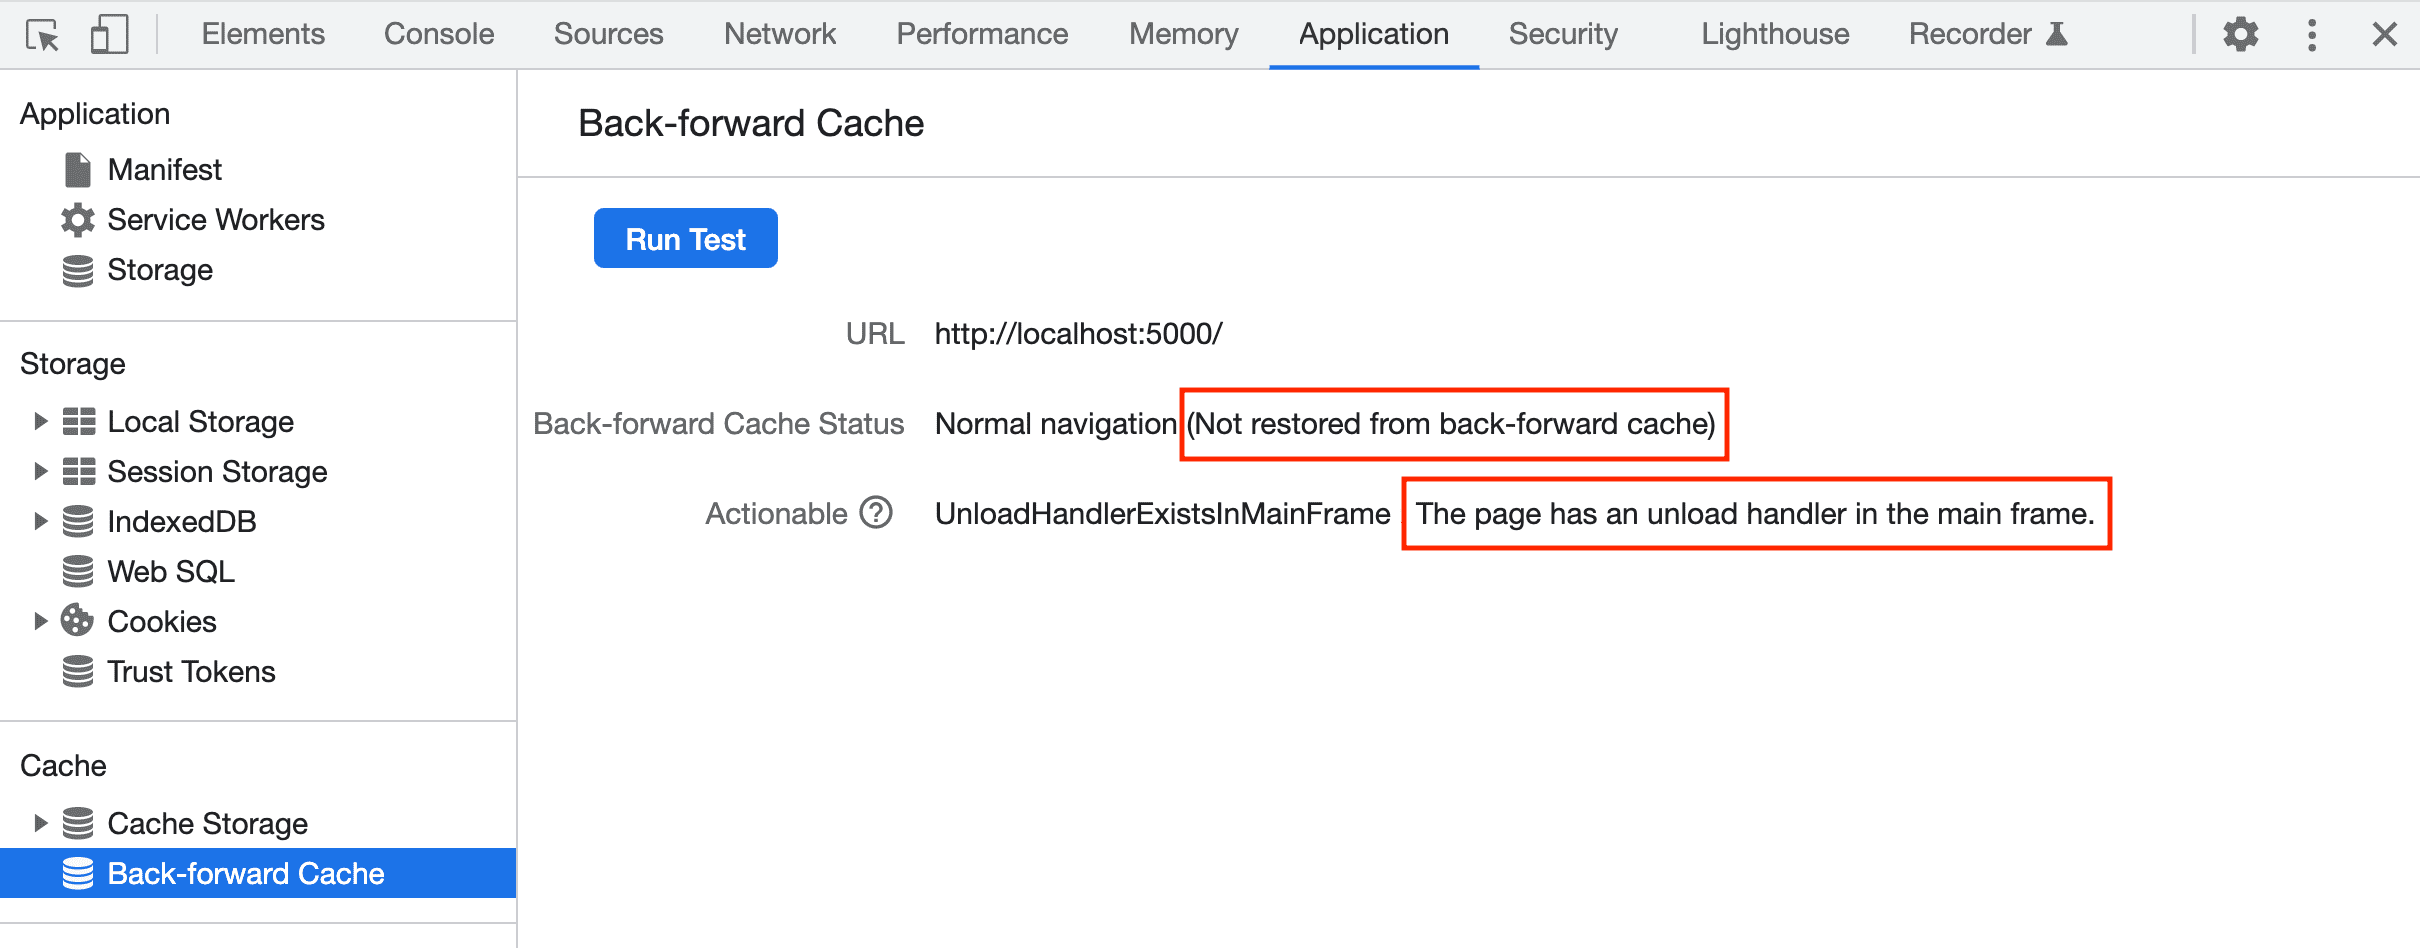 DevTools گزارش شکست در بازیابی صفحه از bfcache